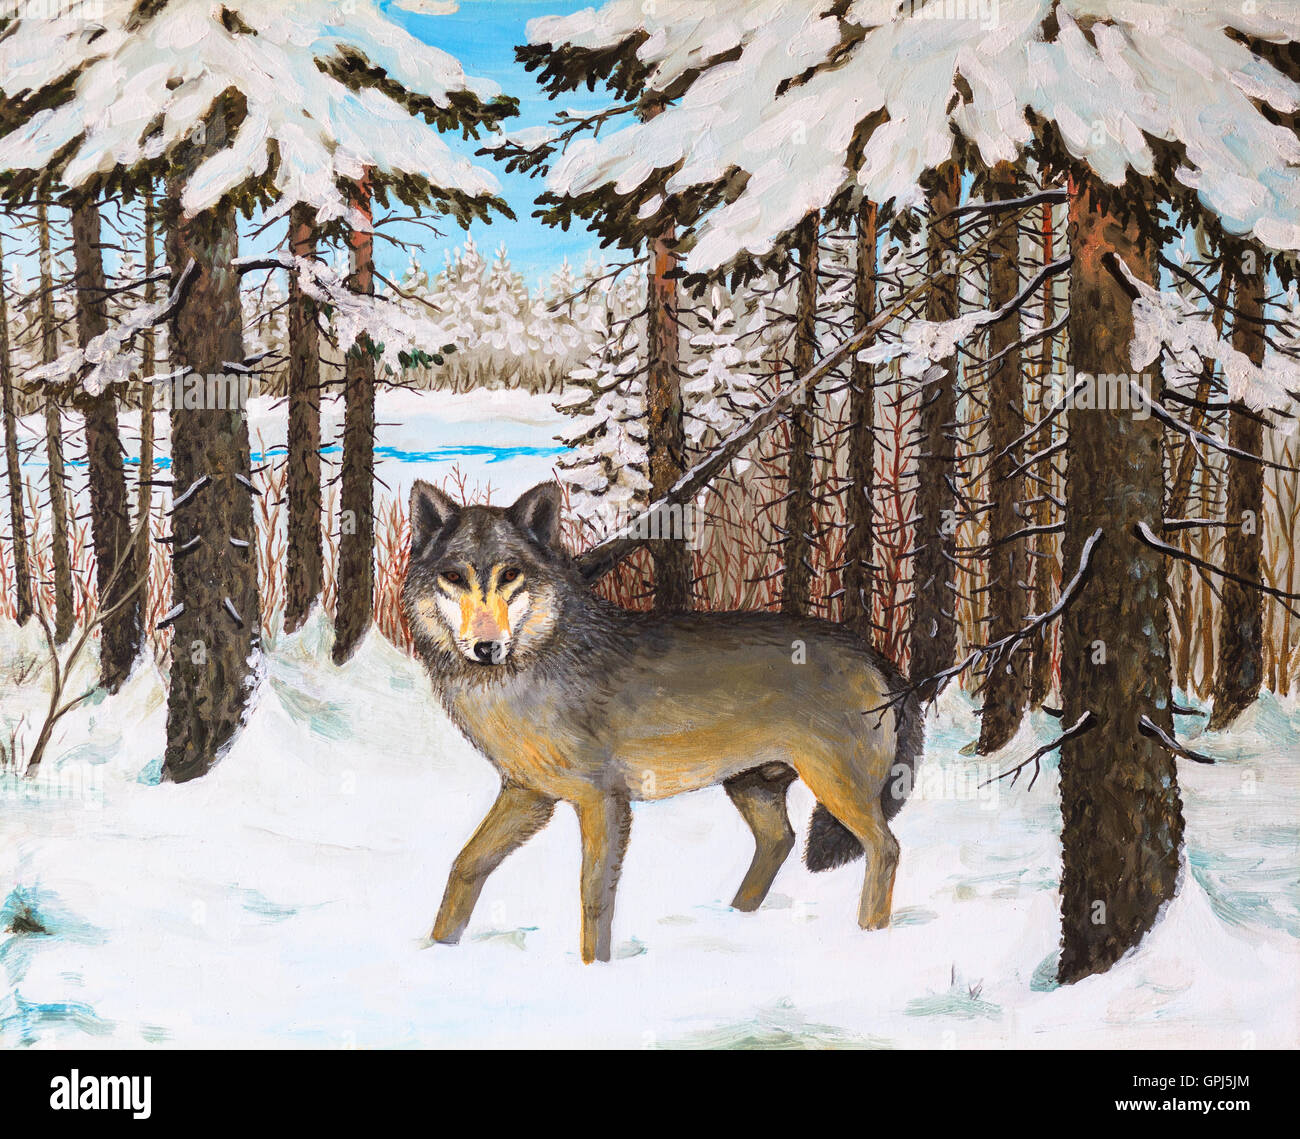 Peinture à l'huile - loup dans la forêt de pins, hiver, photo couleur , dessin abstrait Banque D'Images